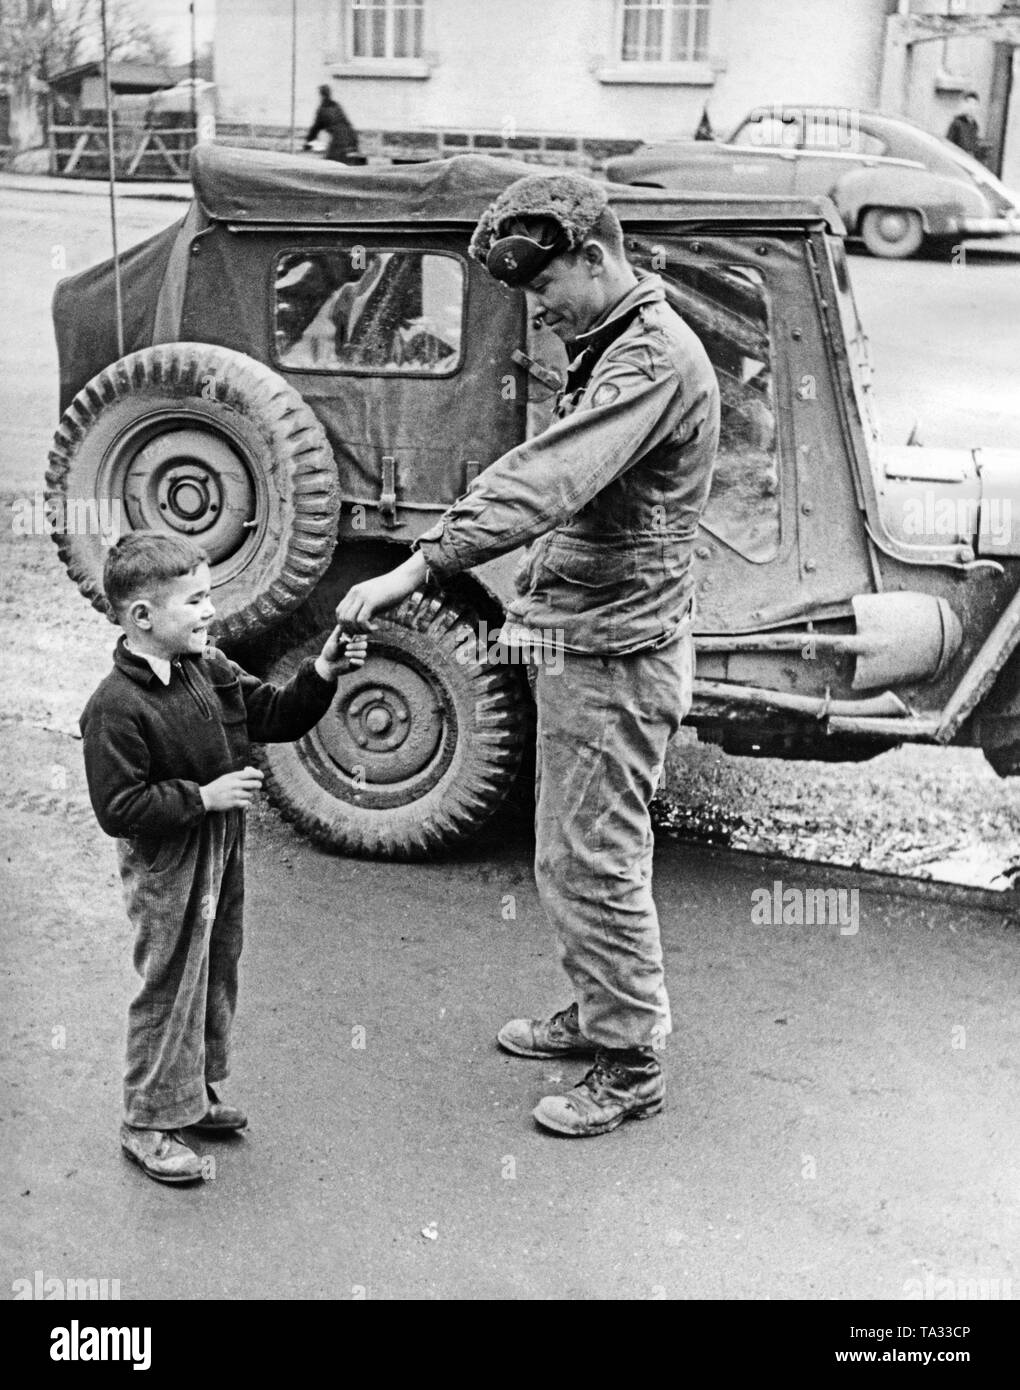 Un soldat américain, un garçon donne un chewing-gum. Après la fin de la guerre, de nombreux soldats américains ont été surpris qu'ils n'ont pas d'opposition de la population allemande. Banque D'Images